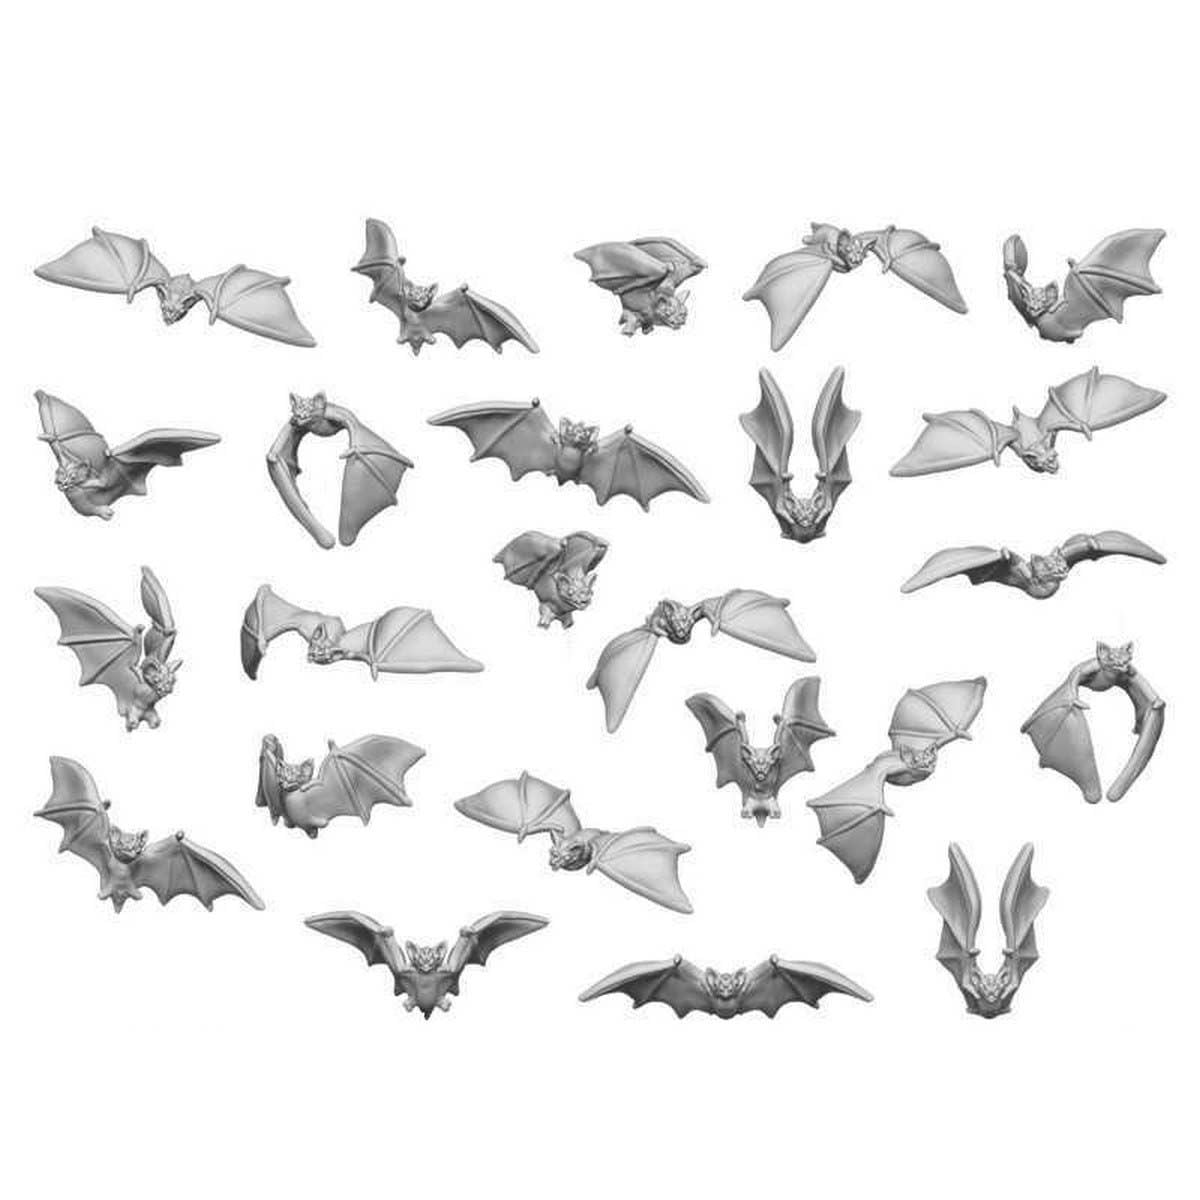 3D Printed Set - Bats